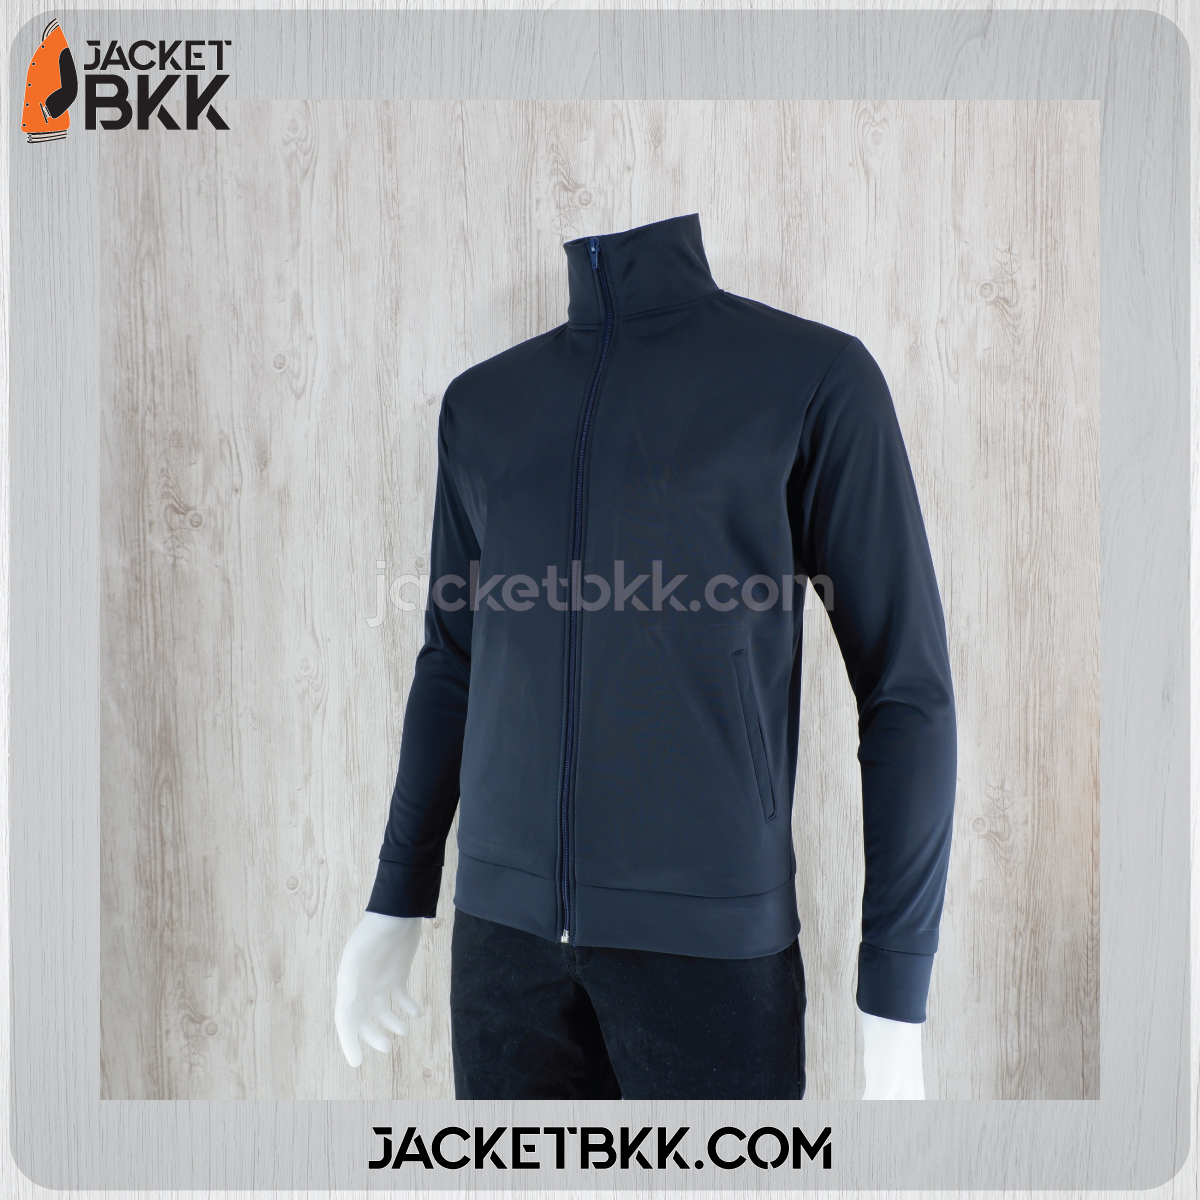 JKK-04D เสื้อแจ็คเก็ต ผ้าขูดขน สีกรมท่าเข้ม